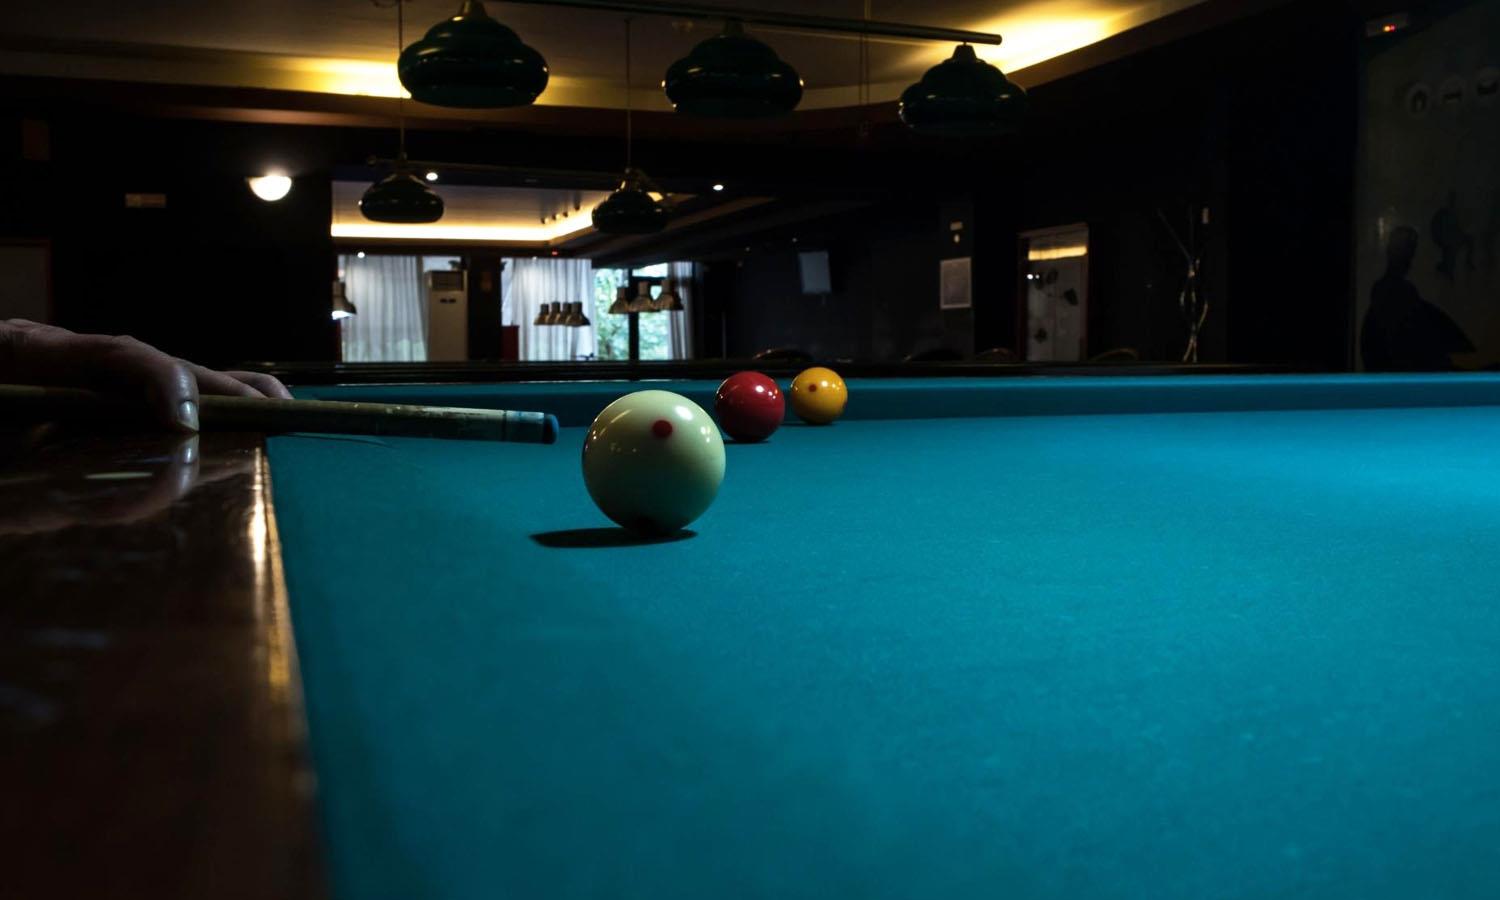 Pool table in Gabbro bar